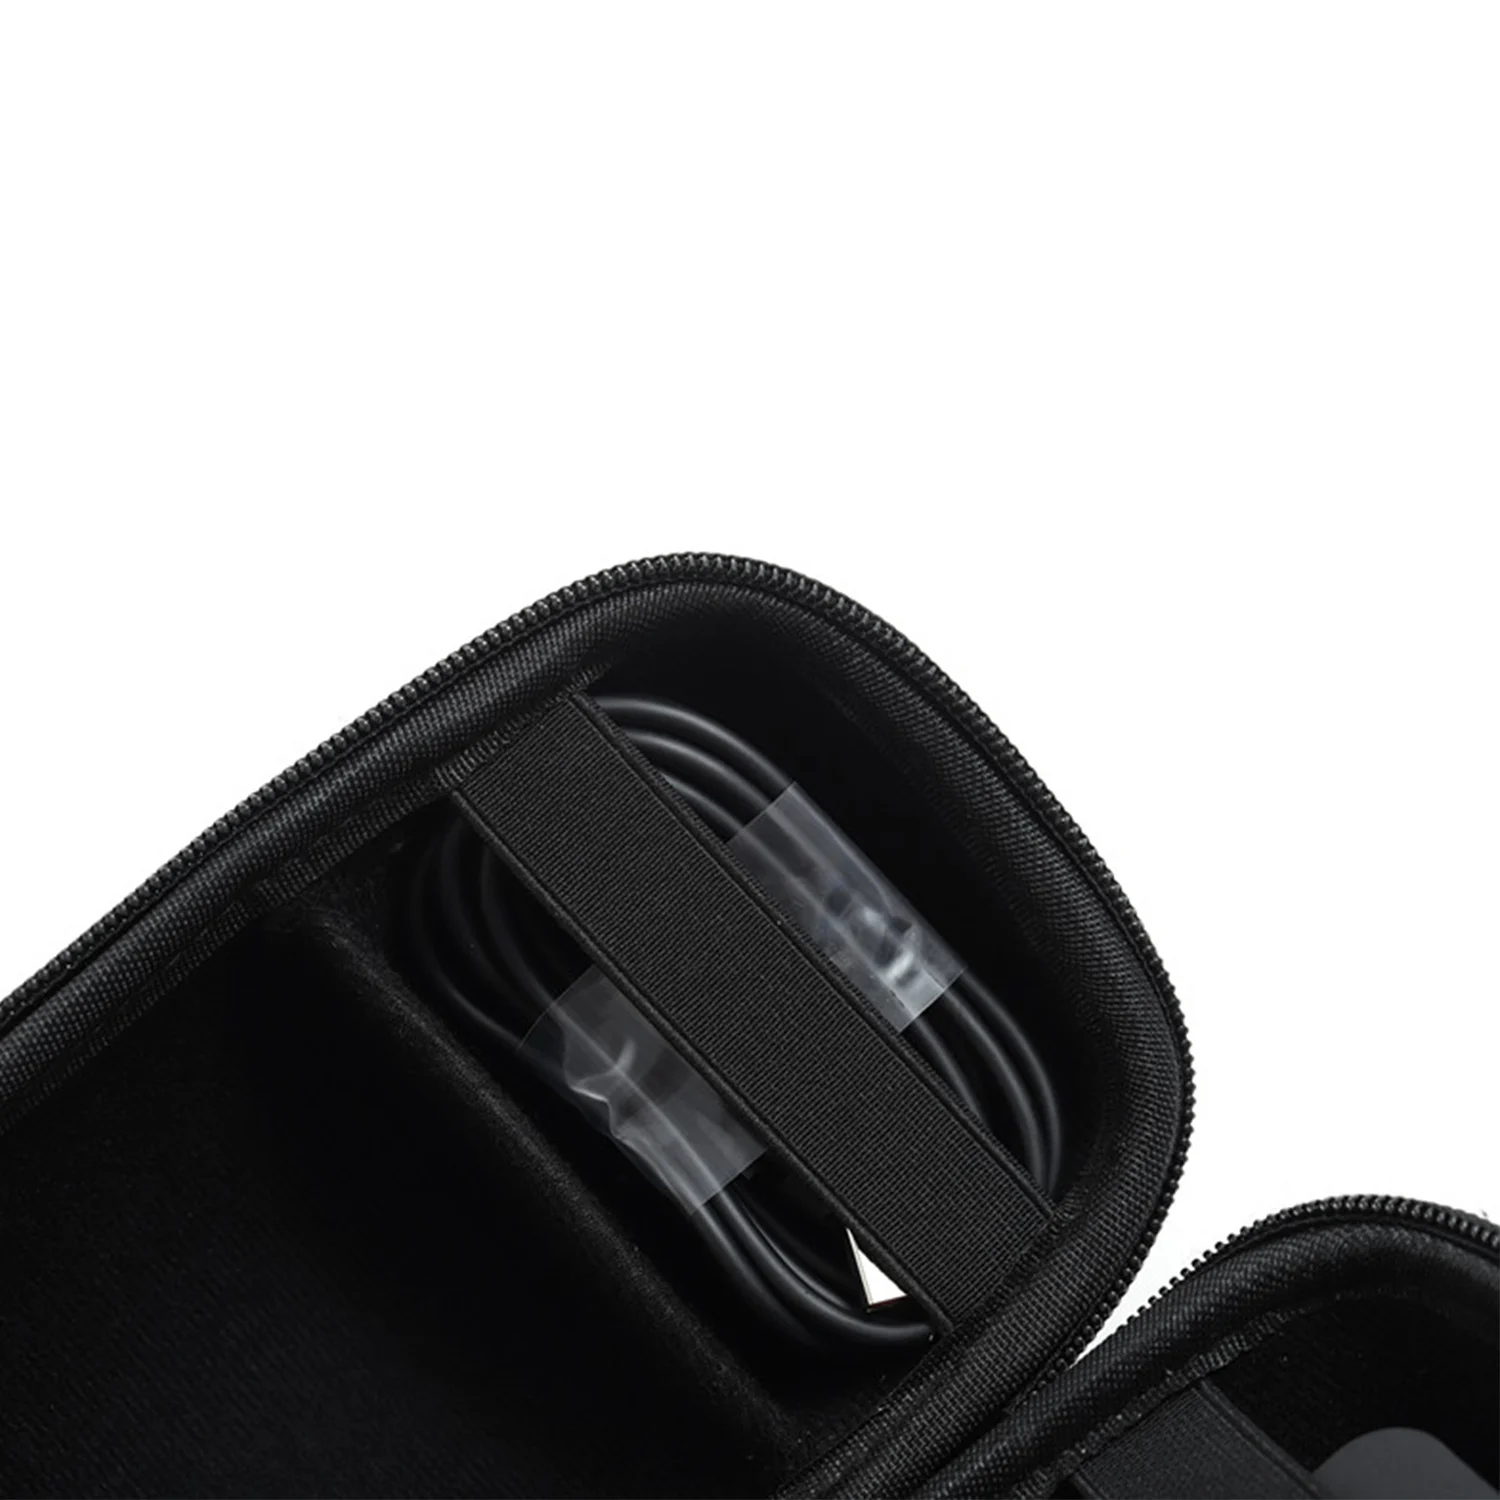 Gosear портативный хранения проведения защитный чехол для наушников с плечевым ремнем для JBL Charge 4 Charge4 спортивный bluetooth-динамик